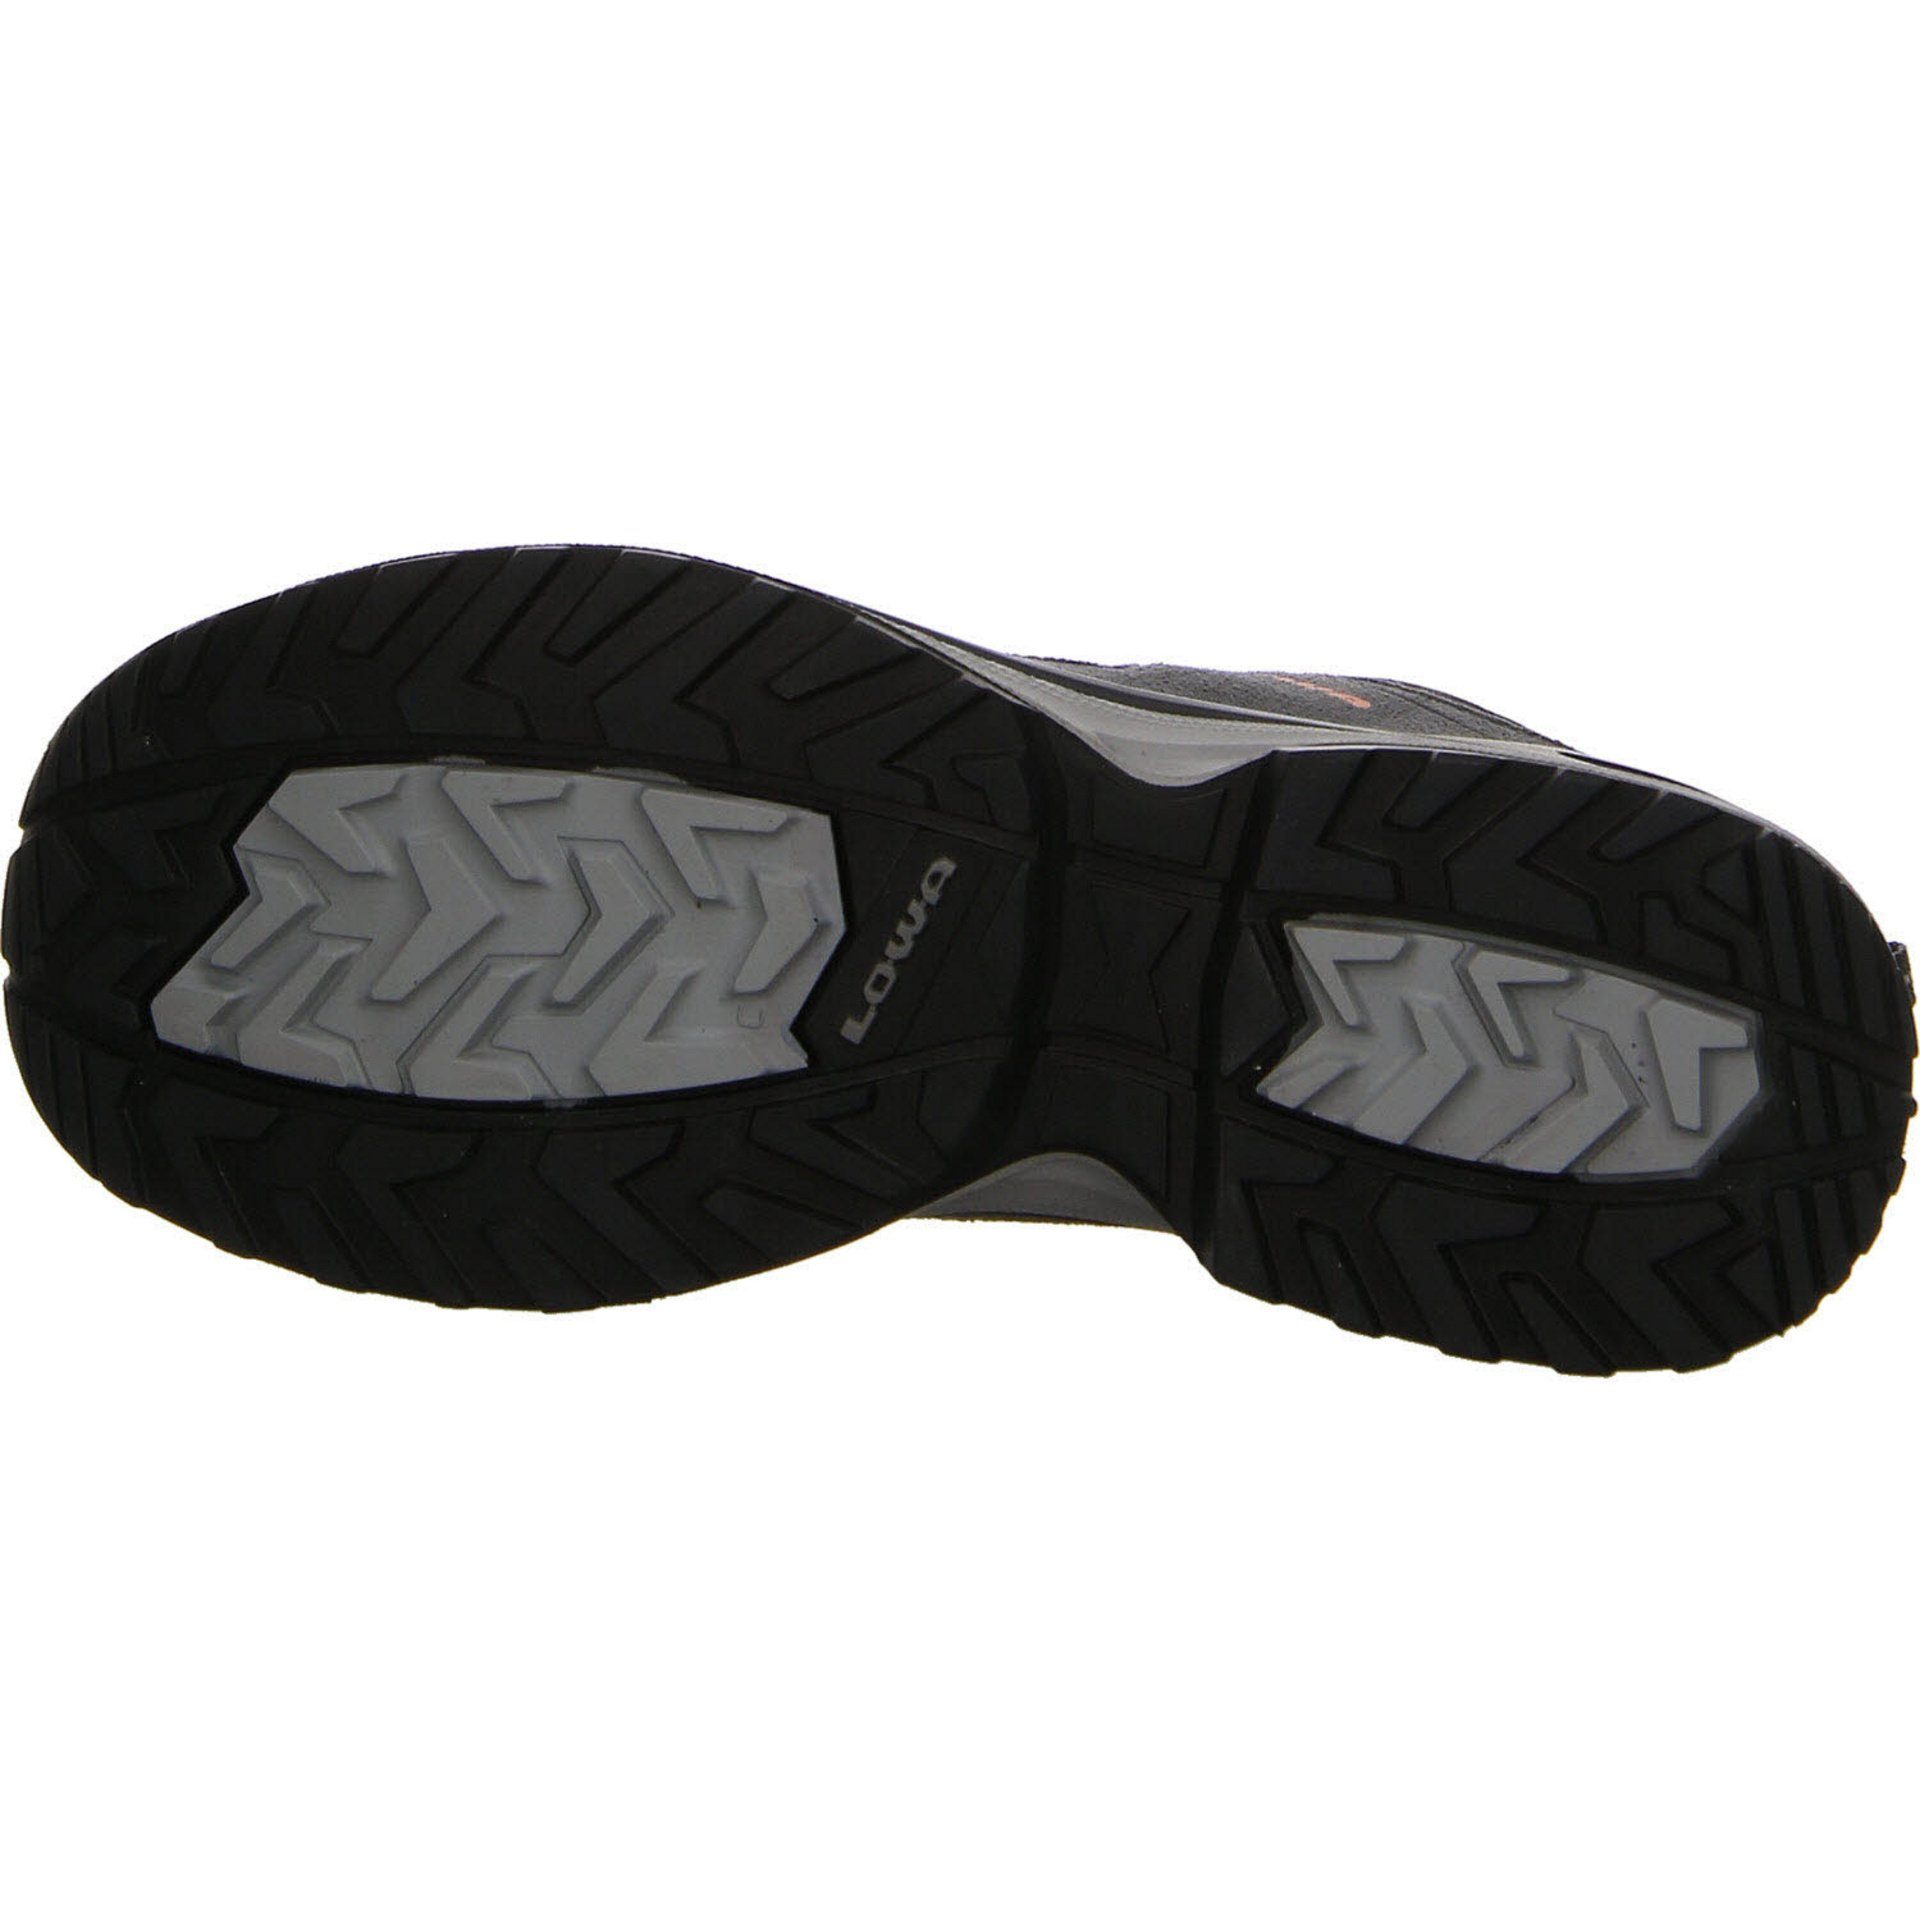 Lowa Damen Schuhe asphalt/lachs Leder-/Textilkombination Outdoorschuh Evo Innox Outdoorschuh GTX Lo Outdoor